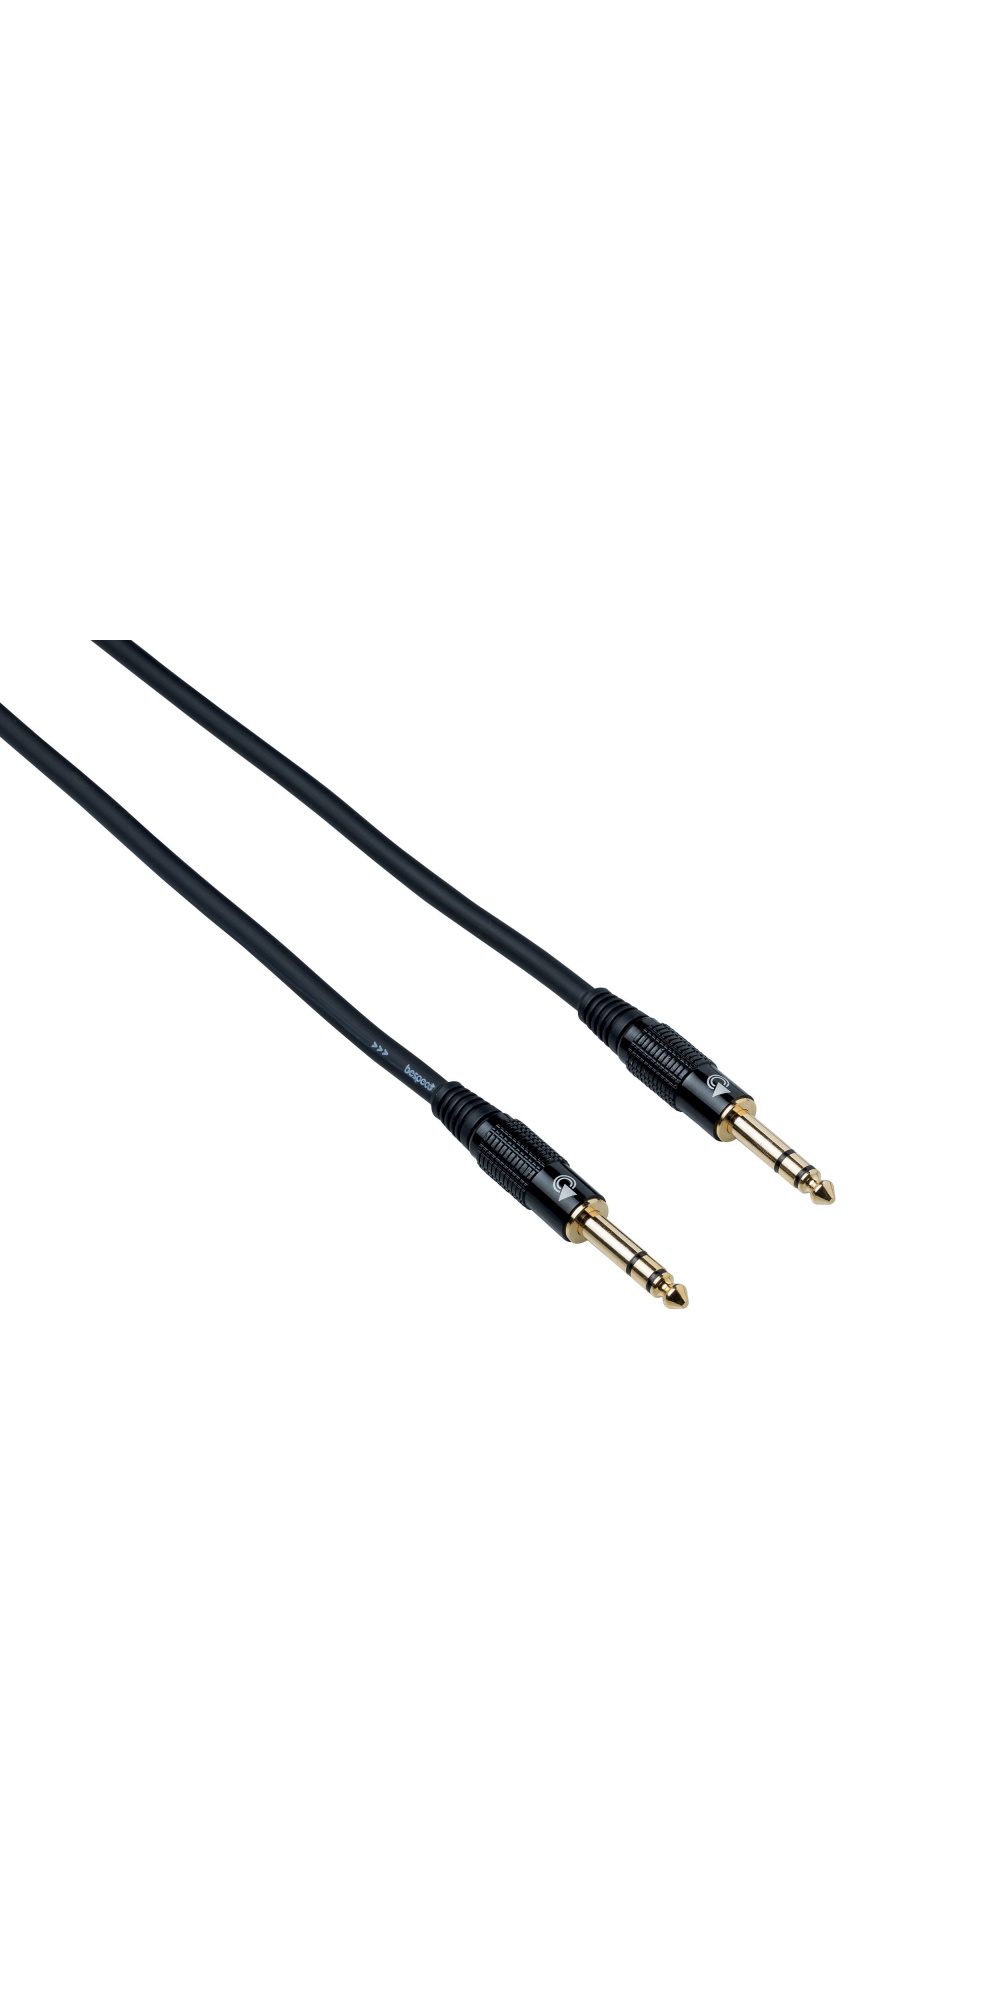 Инструментальный кабель Bespeco EASS300 с прямыми разъемами стерео 6,3 мм